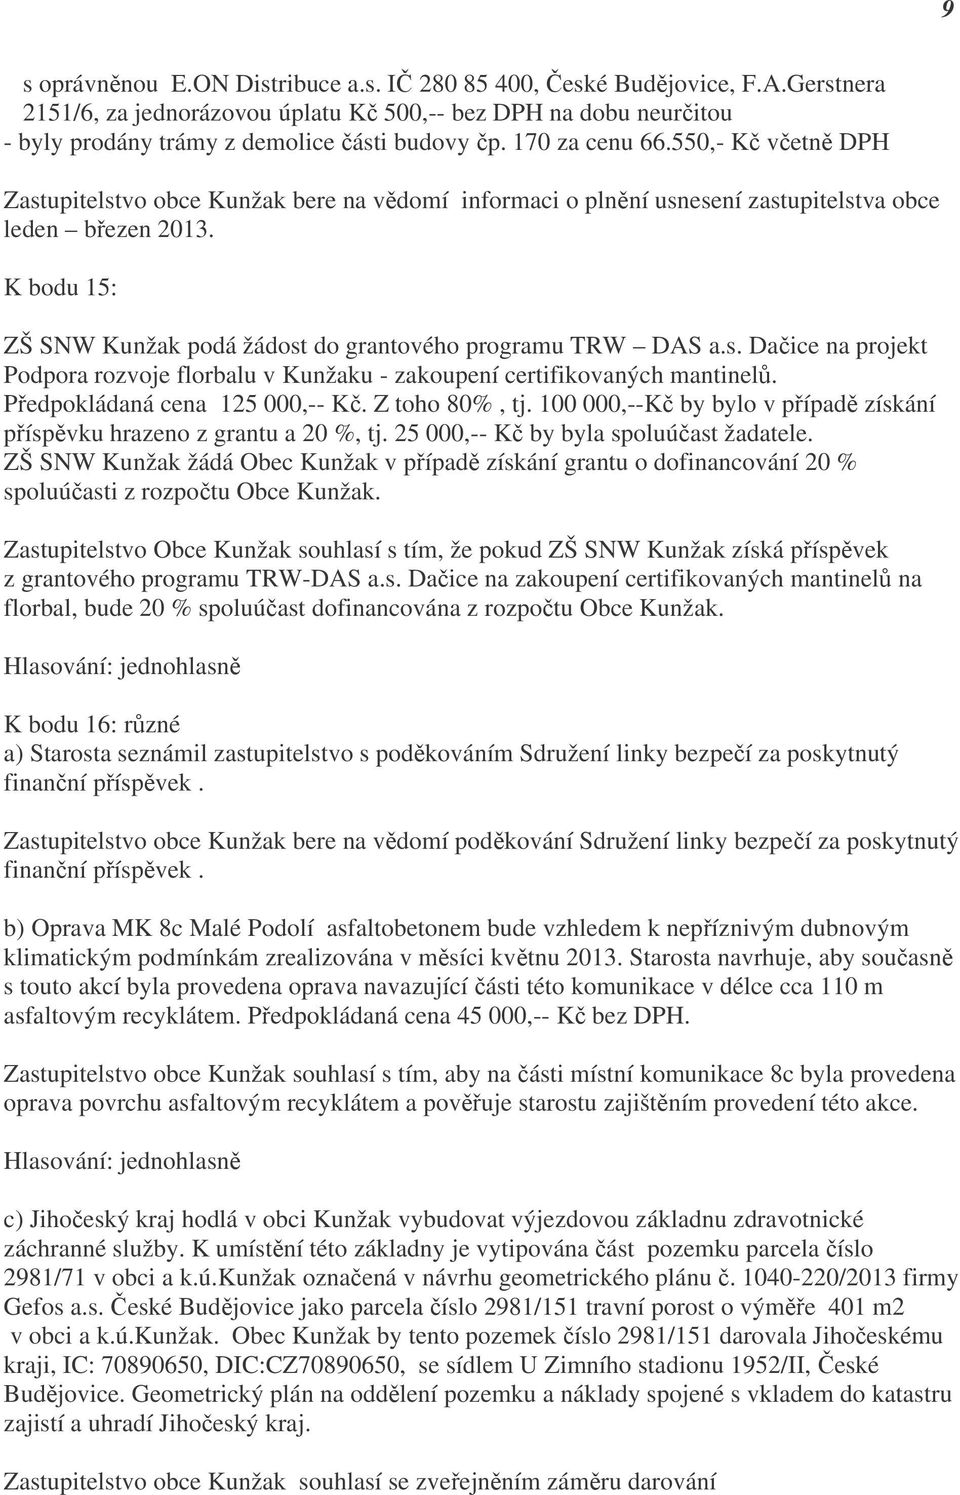 K bodu 15: ZŠ SNW Kunžak podá žádost do grantového programu TRW DAS a.s. Dačice na projekt Podpora rozvoje florbalu v Kunžaku - zakoupení certifikovaných mantinelů. Předpokládaná cena 125 000,-- Kč.